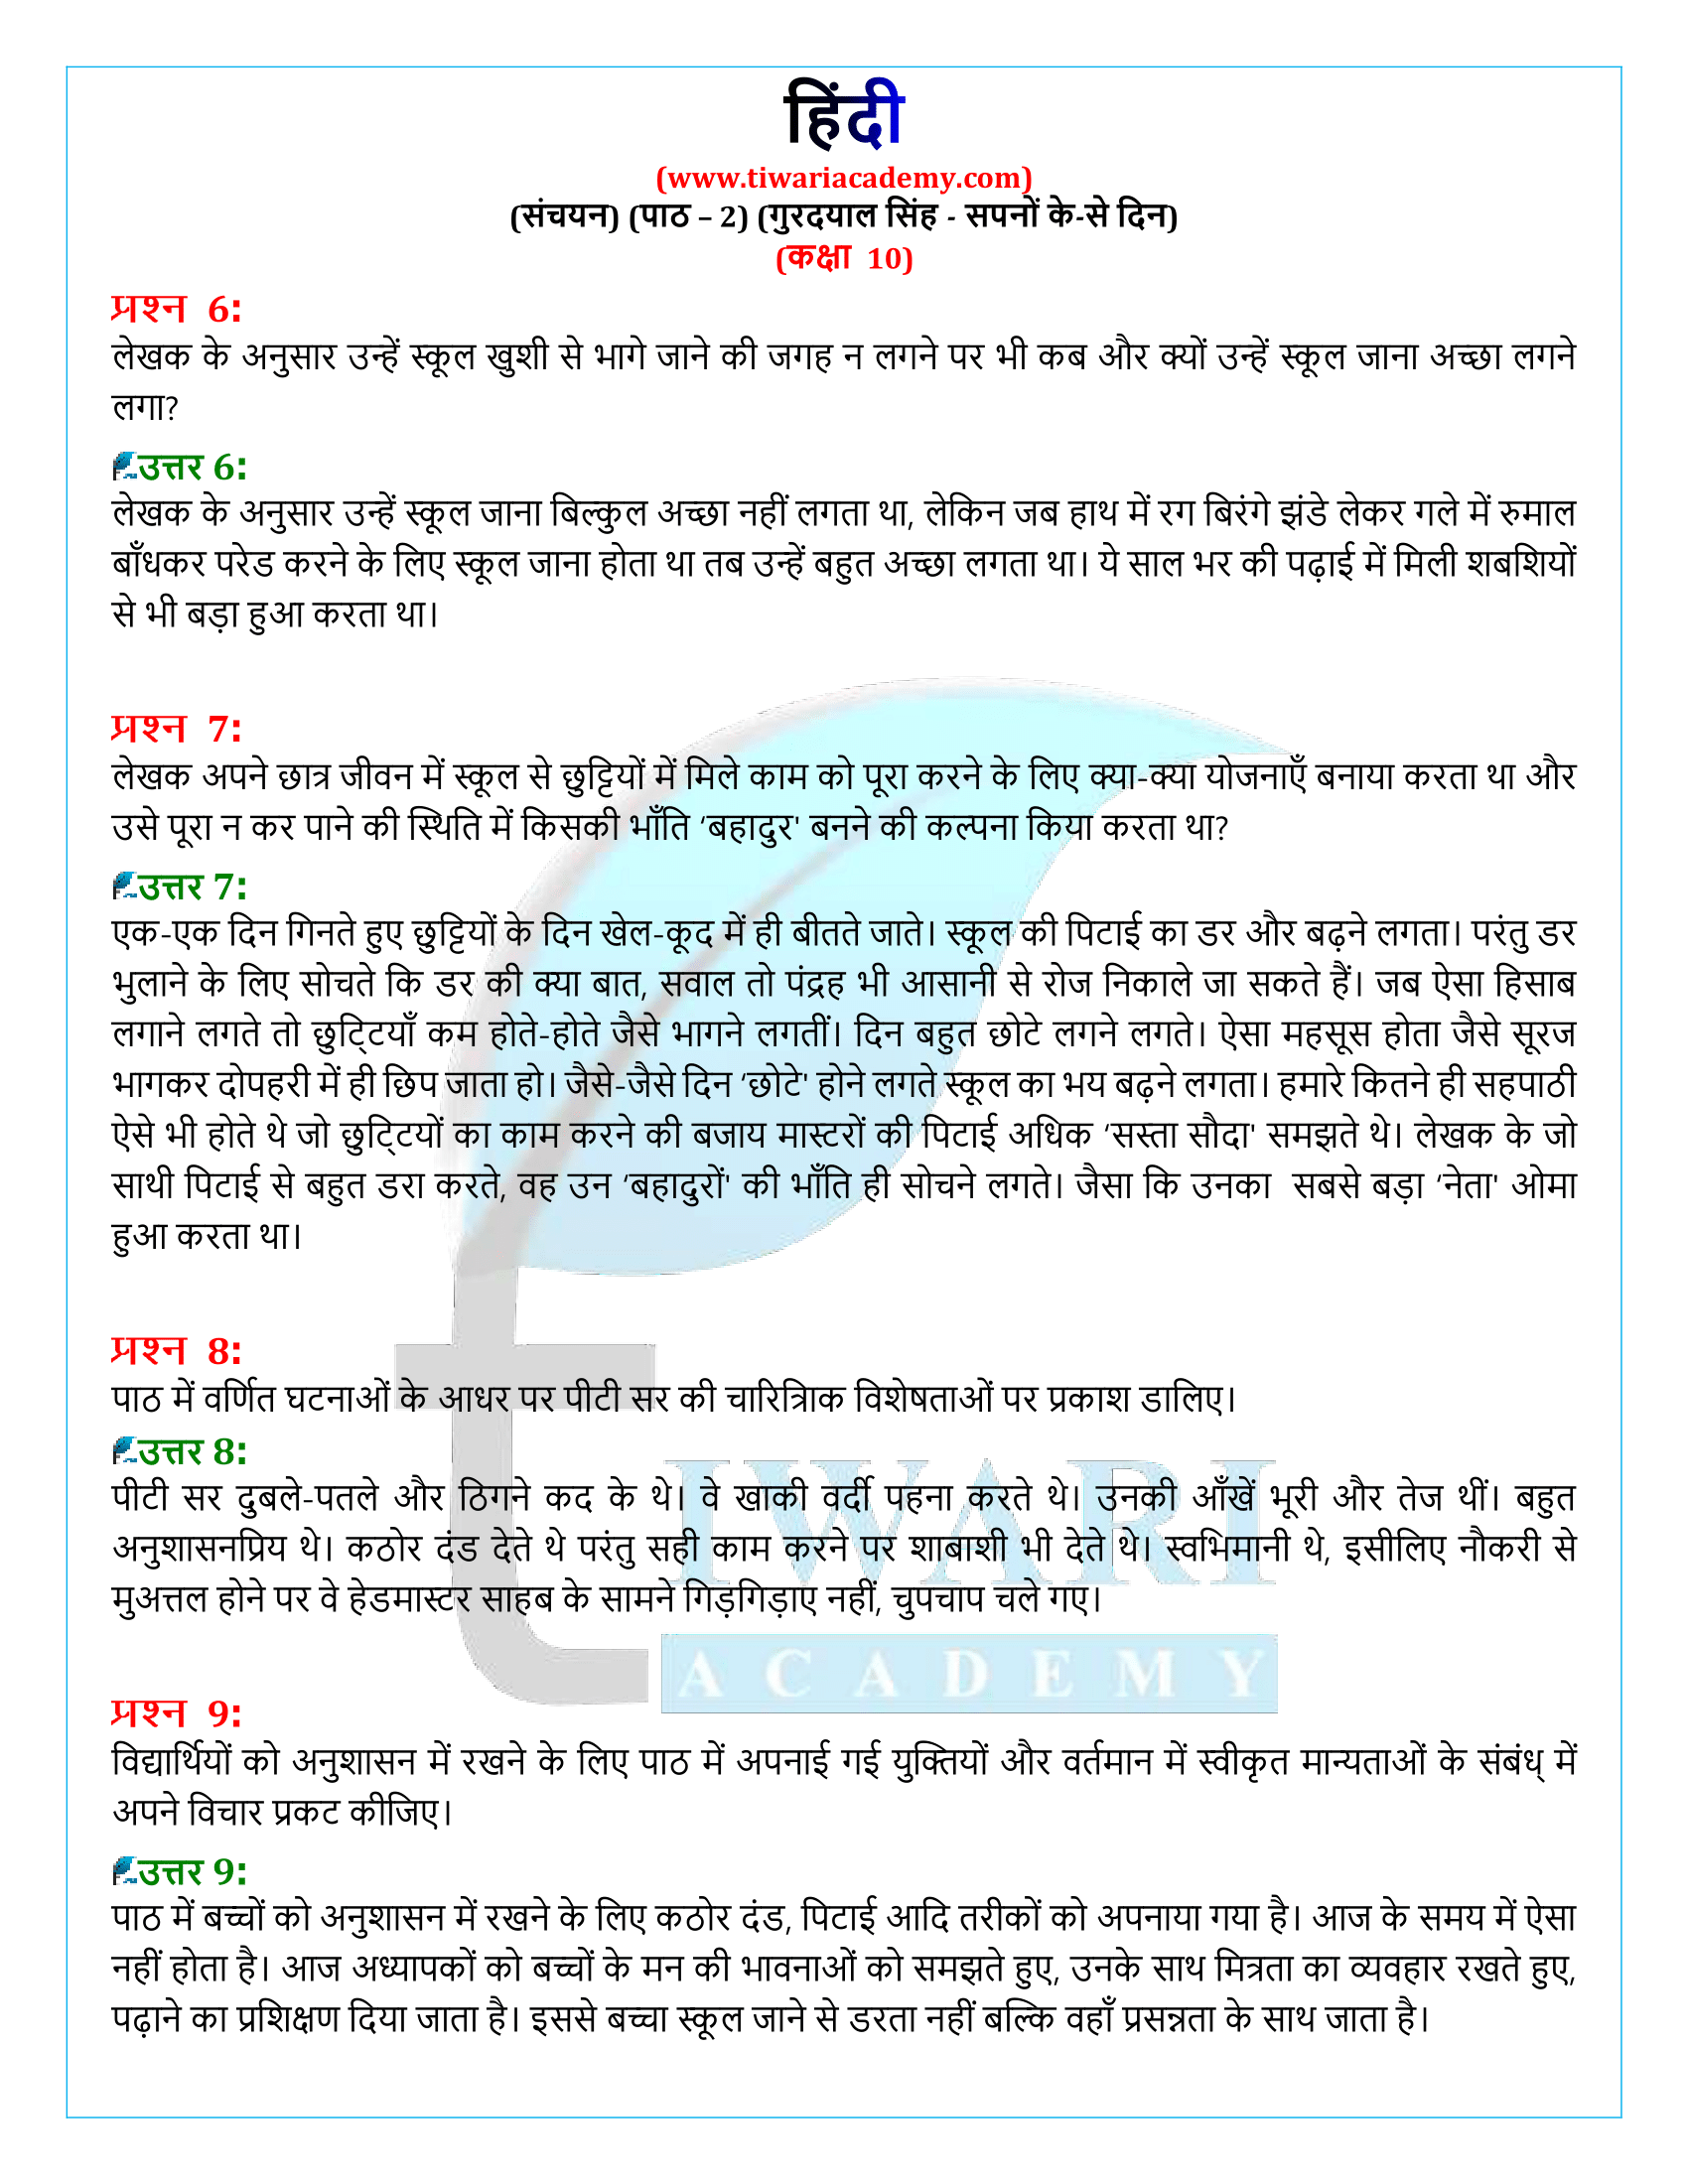 कक्षा 10 हिंदी संचयन अध्याय 2 समाधान